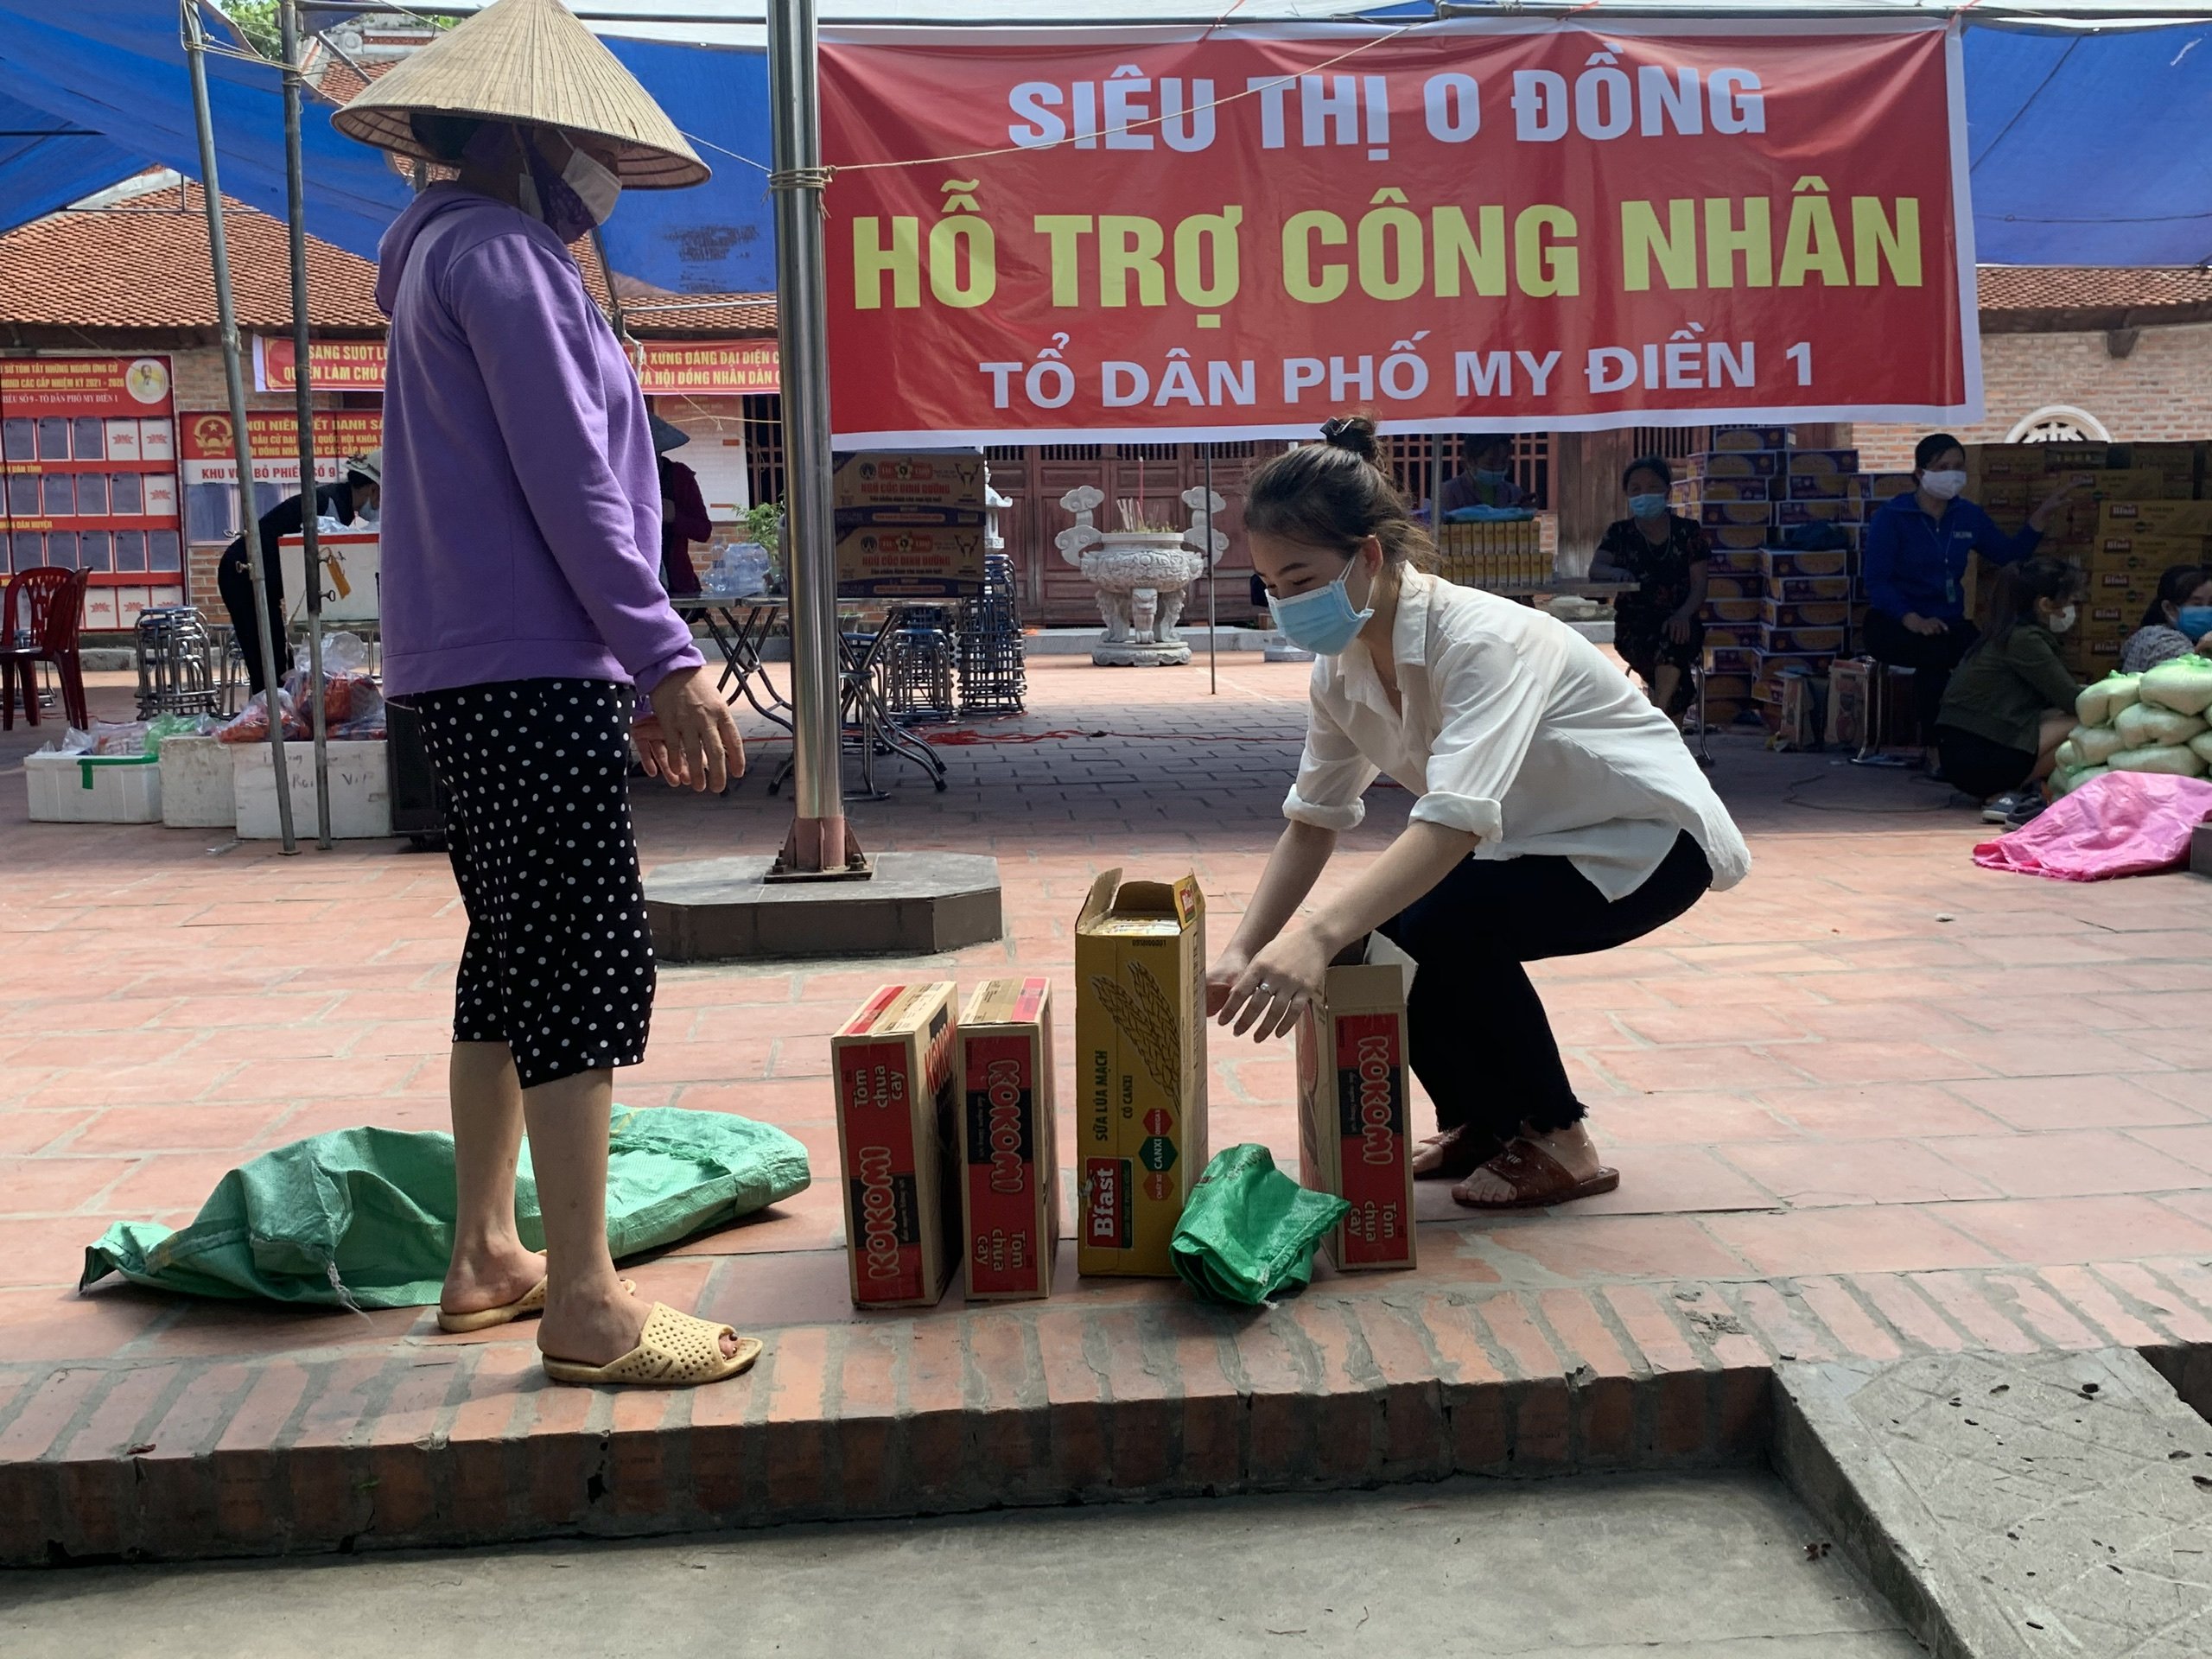 Bắc Giang triển khai hàng loạt ''siêu thị 0 đồng''